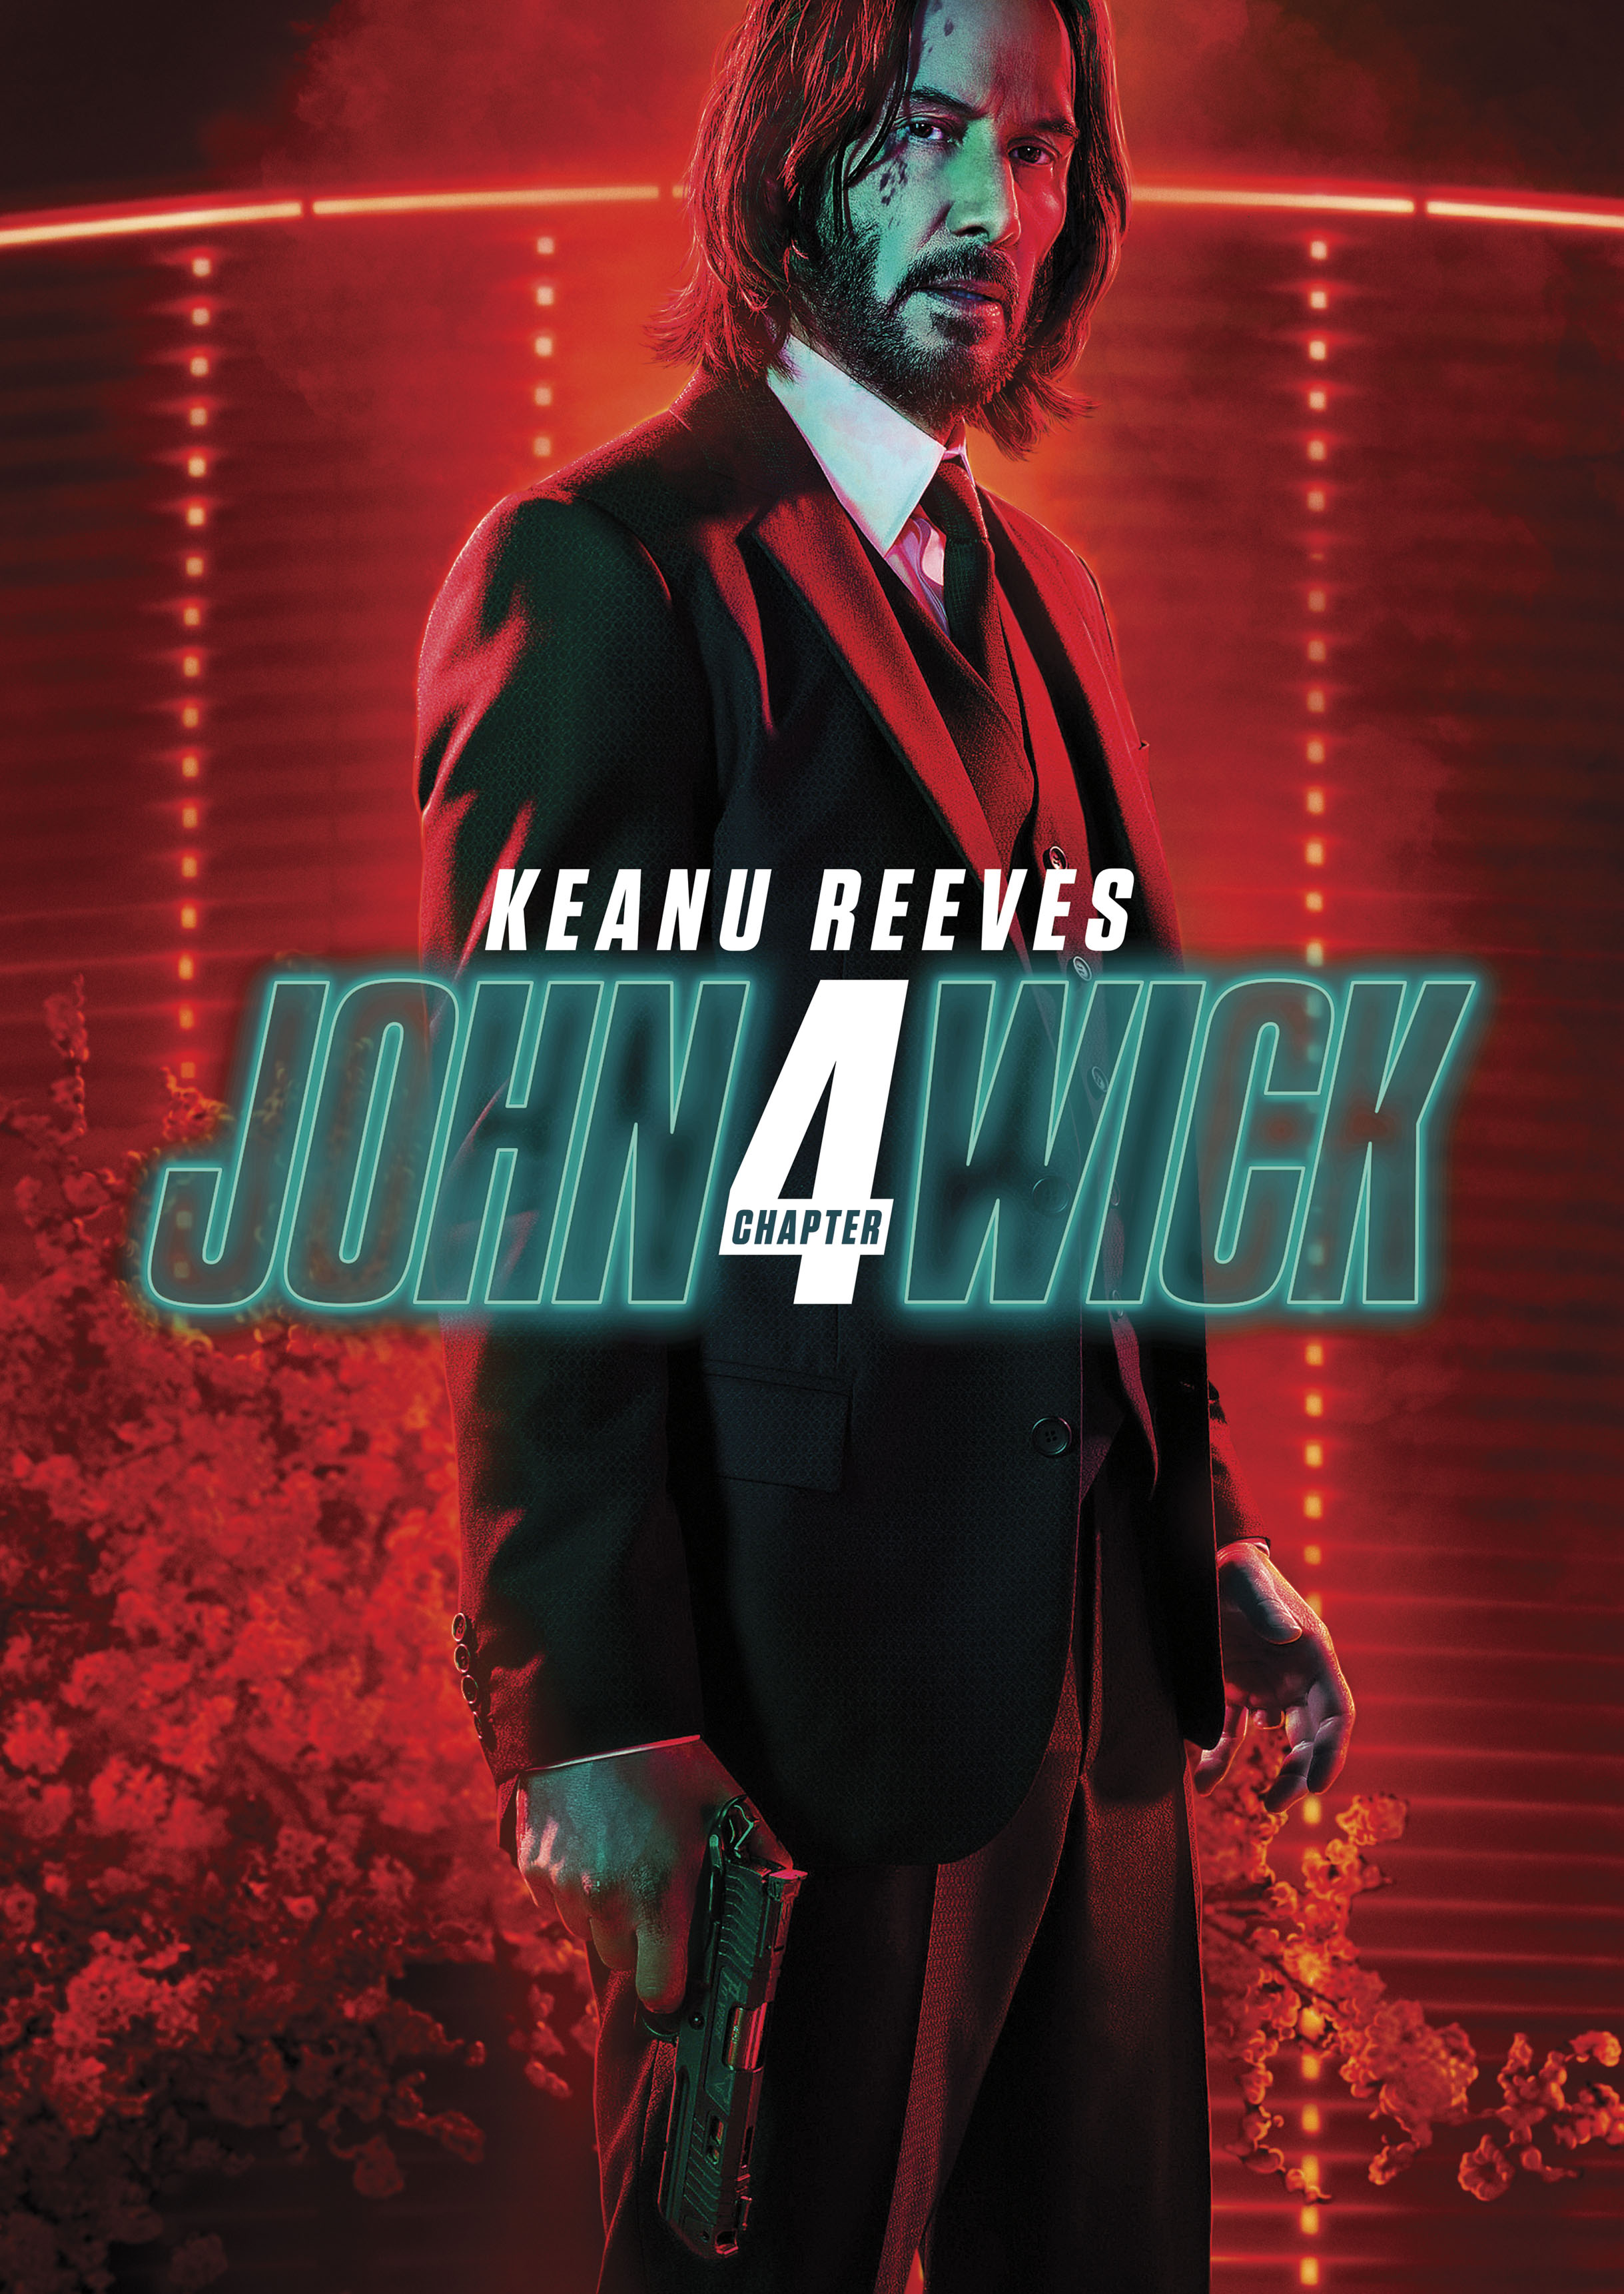 John Wick [4K Ultra HD Blu-ray/Blu-ray] [Includes Digital Copy] [2014] -  Best Buy